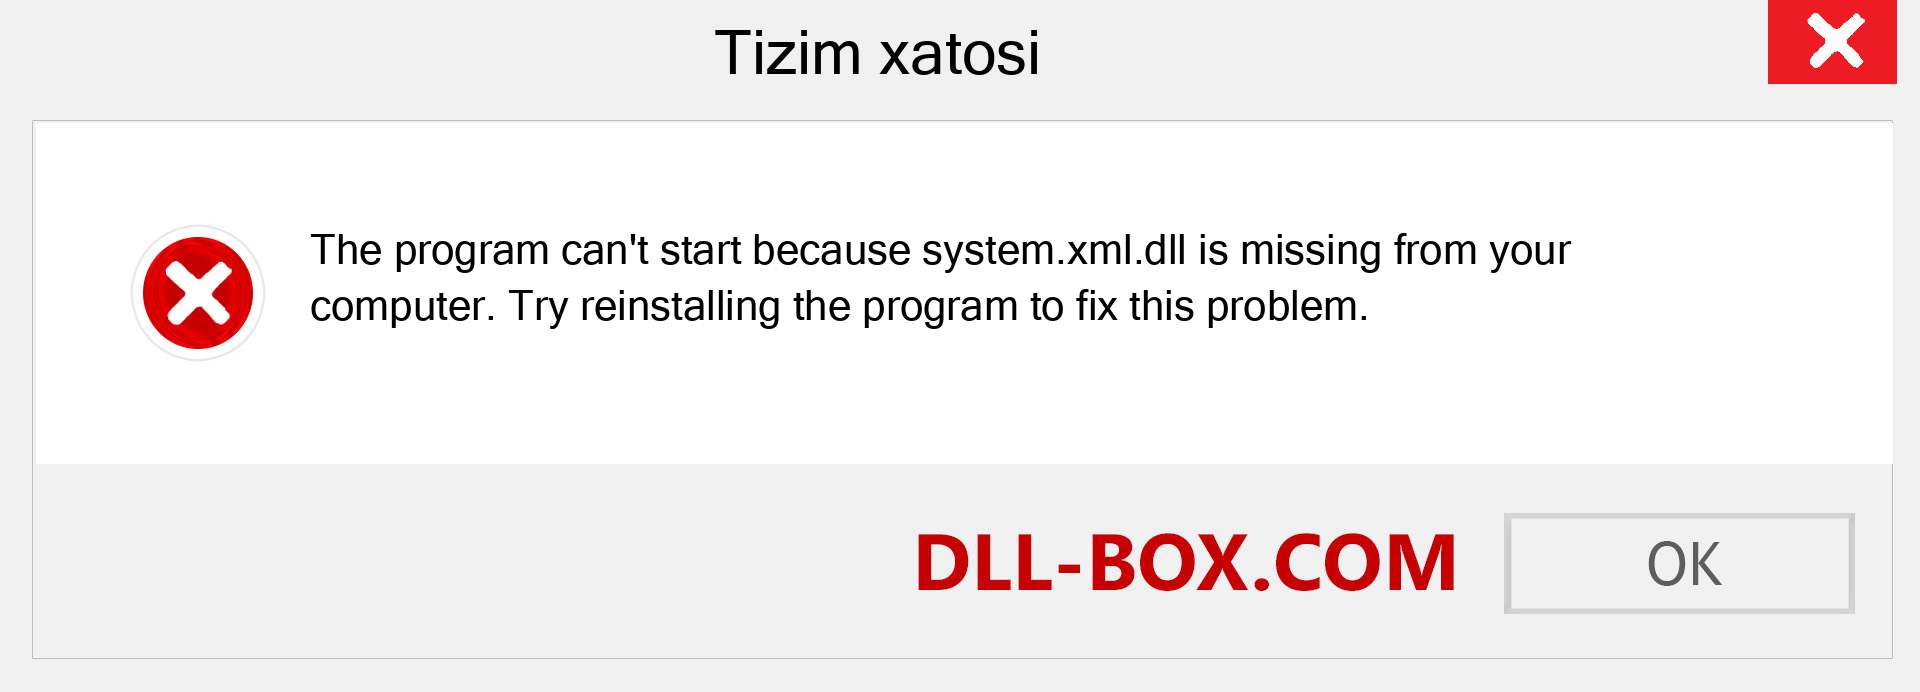 system.xml.dll fayli yo'qolganmi?. Windows 7, 8, 10 uchun yuklab olish - Windowsda system.xml dll etishmayotgan xatoni tuzating, rasmlar, rasmlar